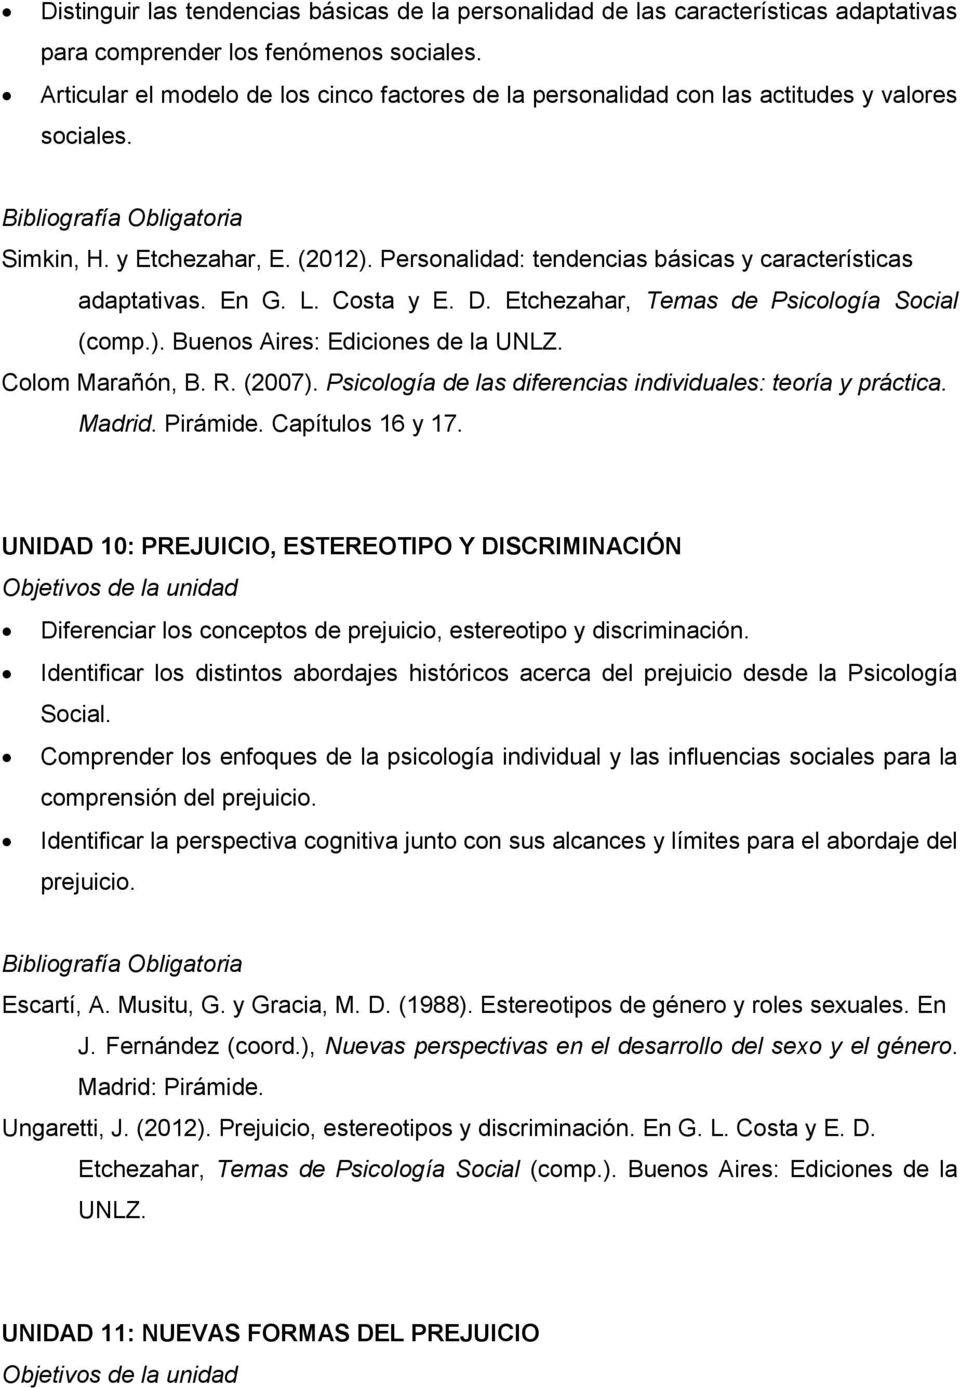 En G. L. Costa y E. D. Etchezahar, Temas de Psicología Social (comp.). Buenos Aires: Ediciones de la UNLZ. Colom Marañón, B. R. (2007). Psicología de las diferencias individuales: teoría y práctica.